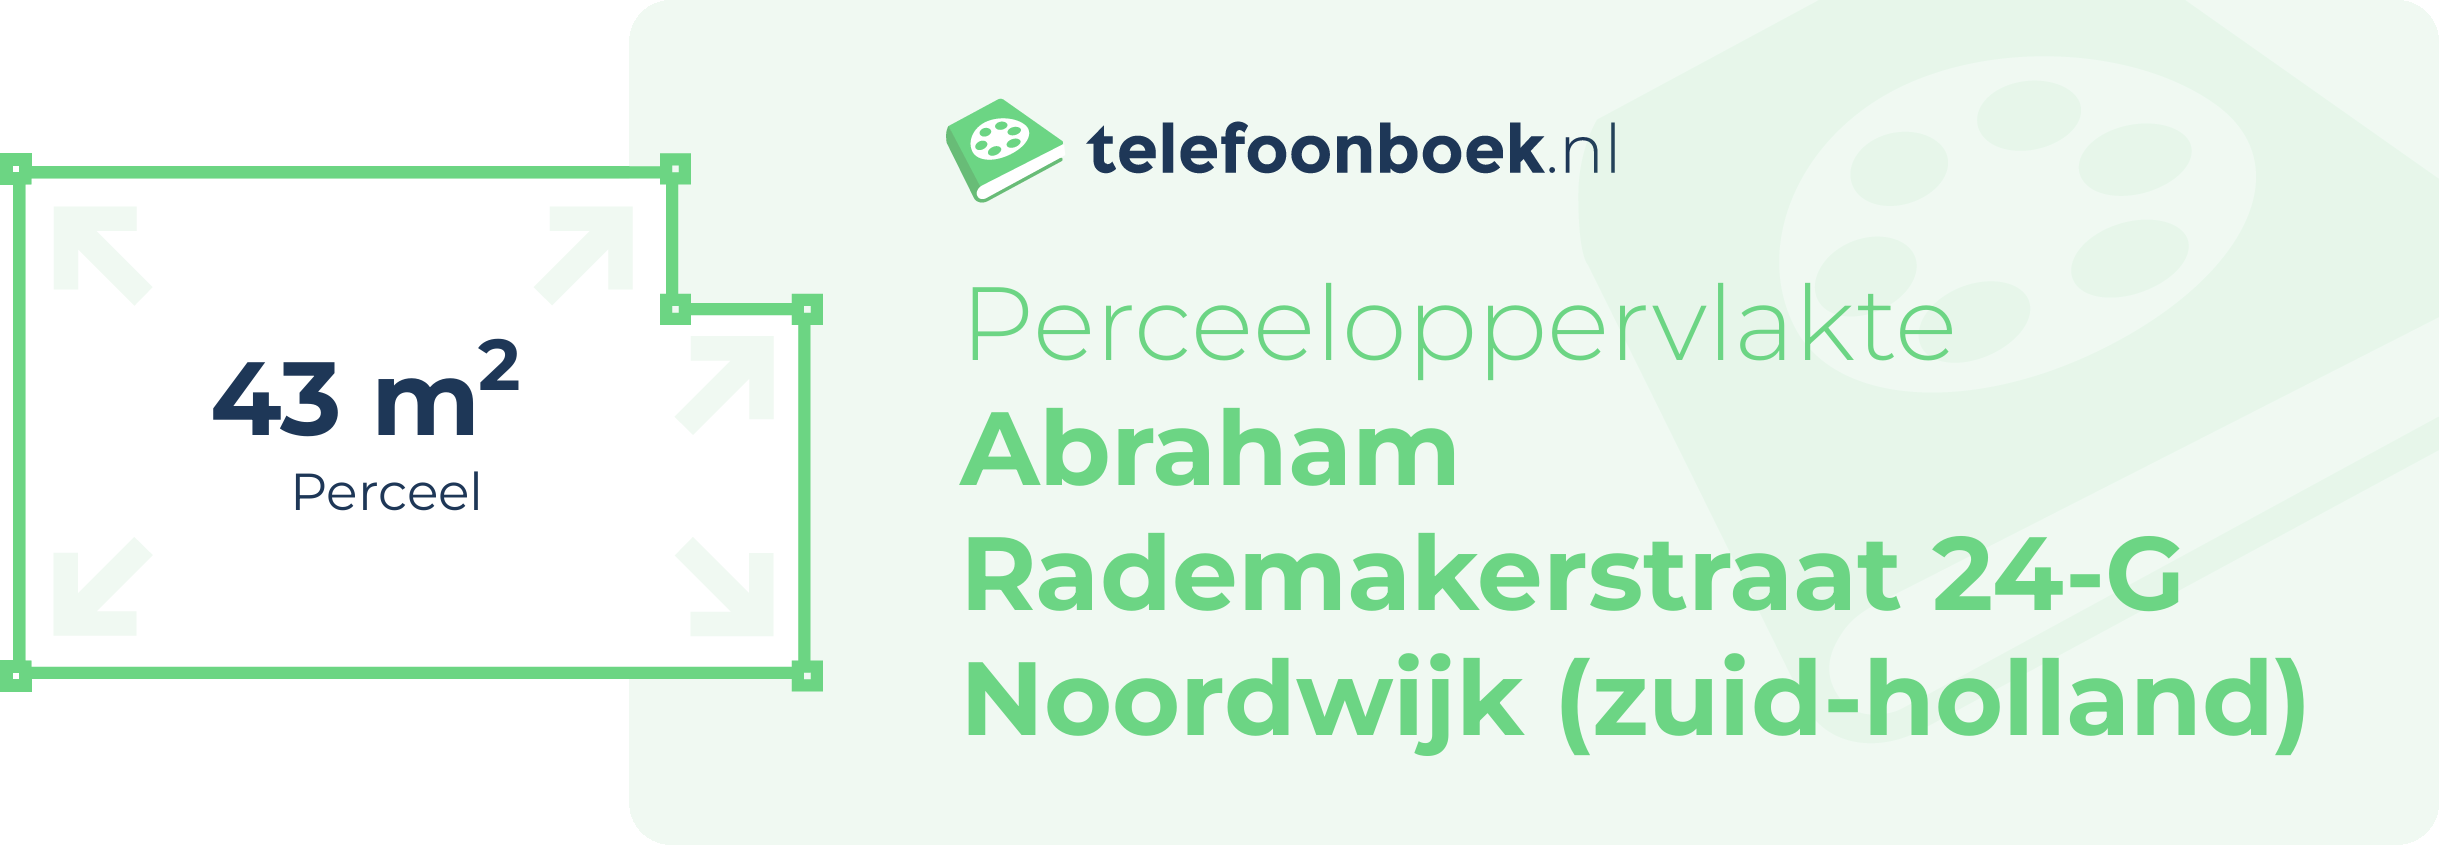 Perceeloppervlakte Abraham Rademakerstraat 24-G Noordwijk (Zuid-Holland)